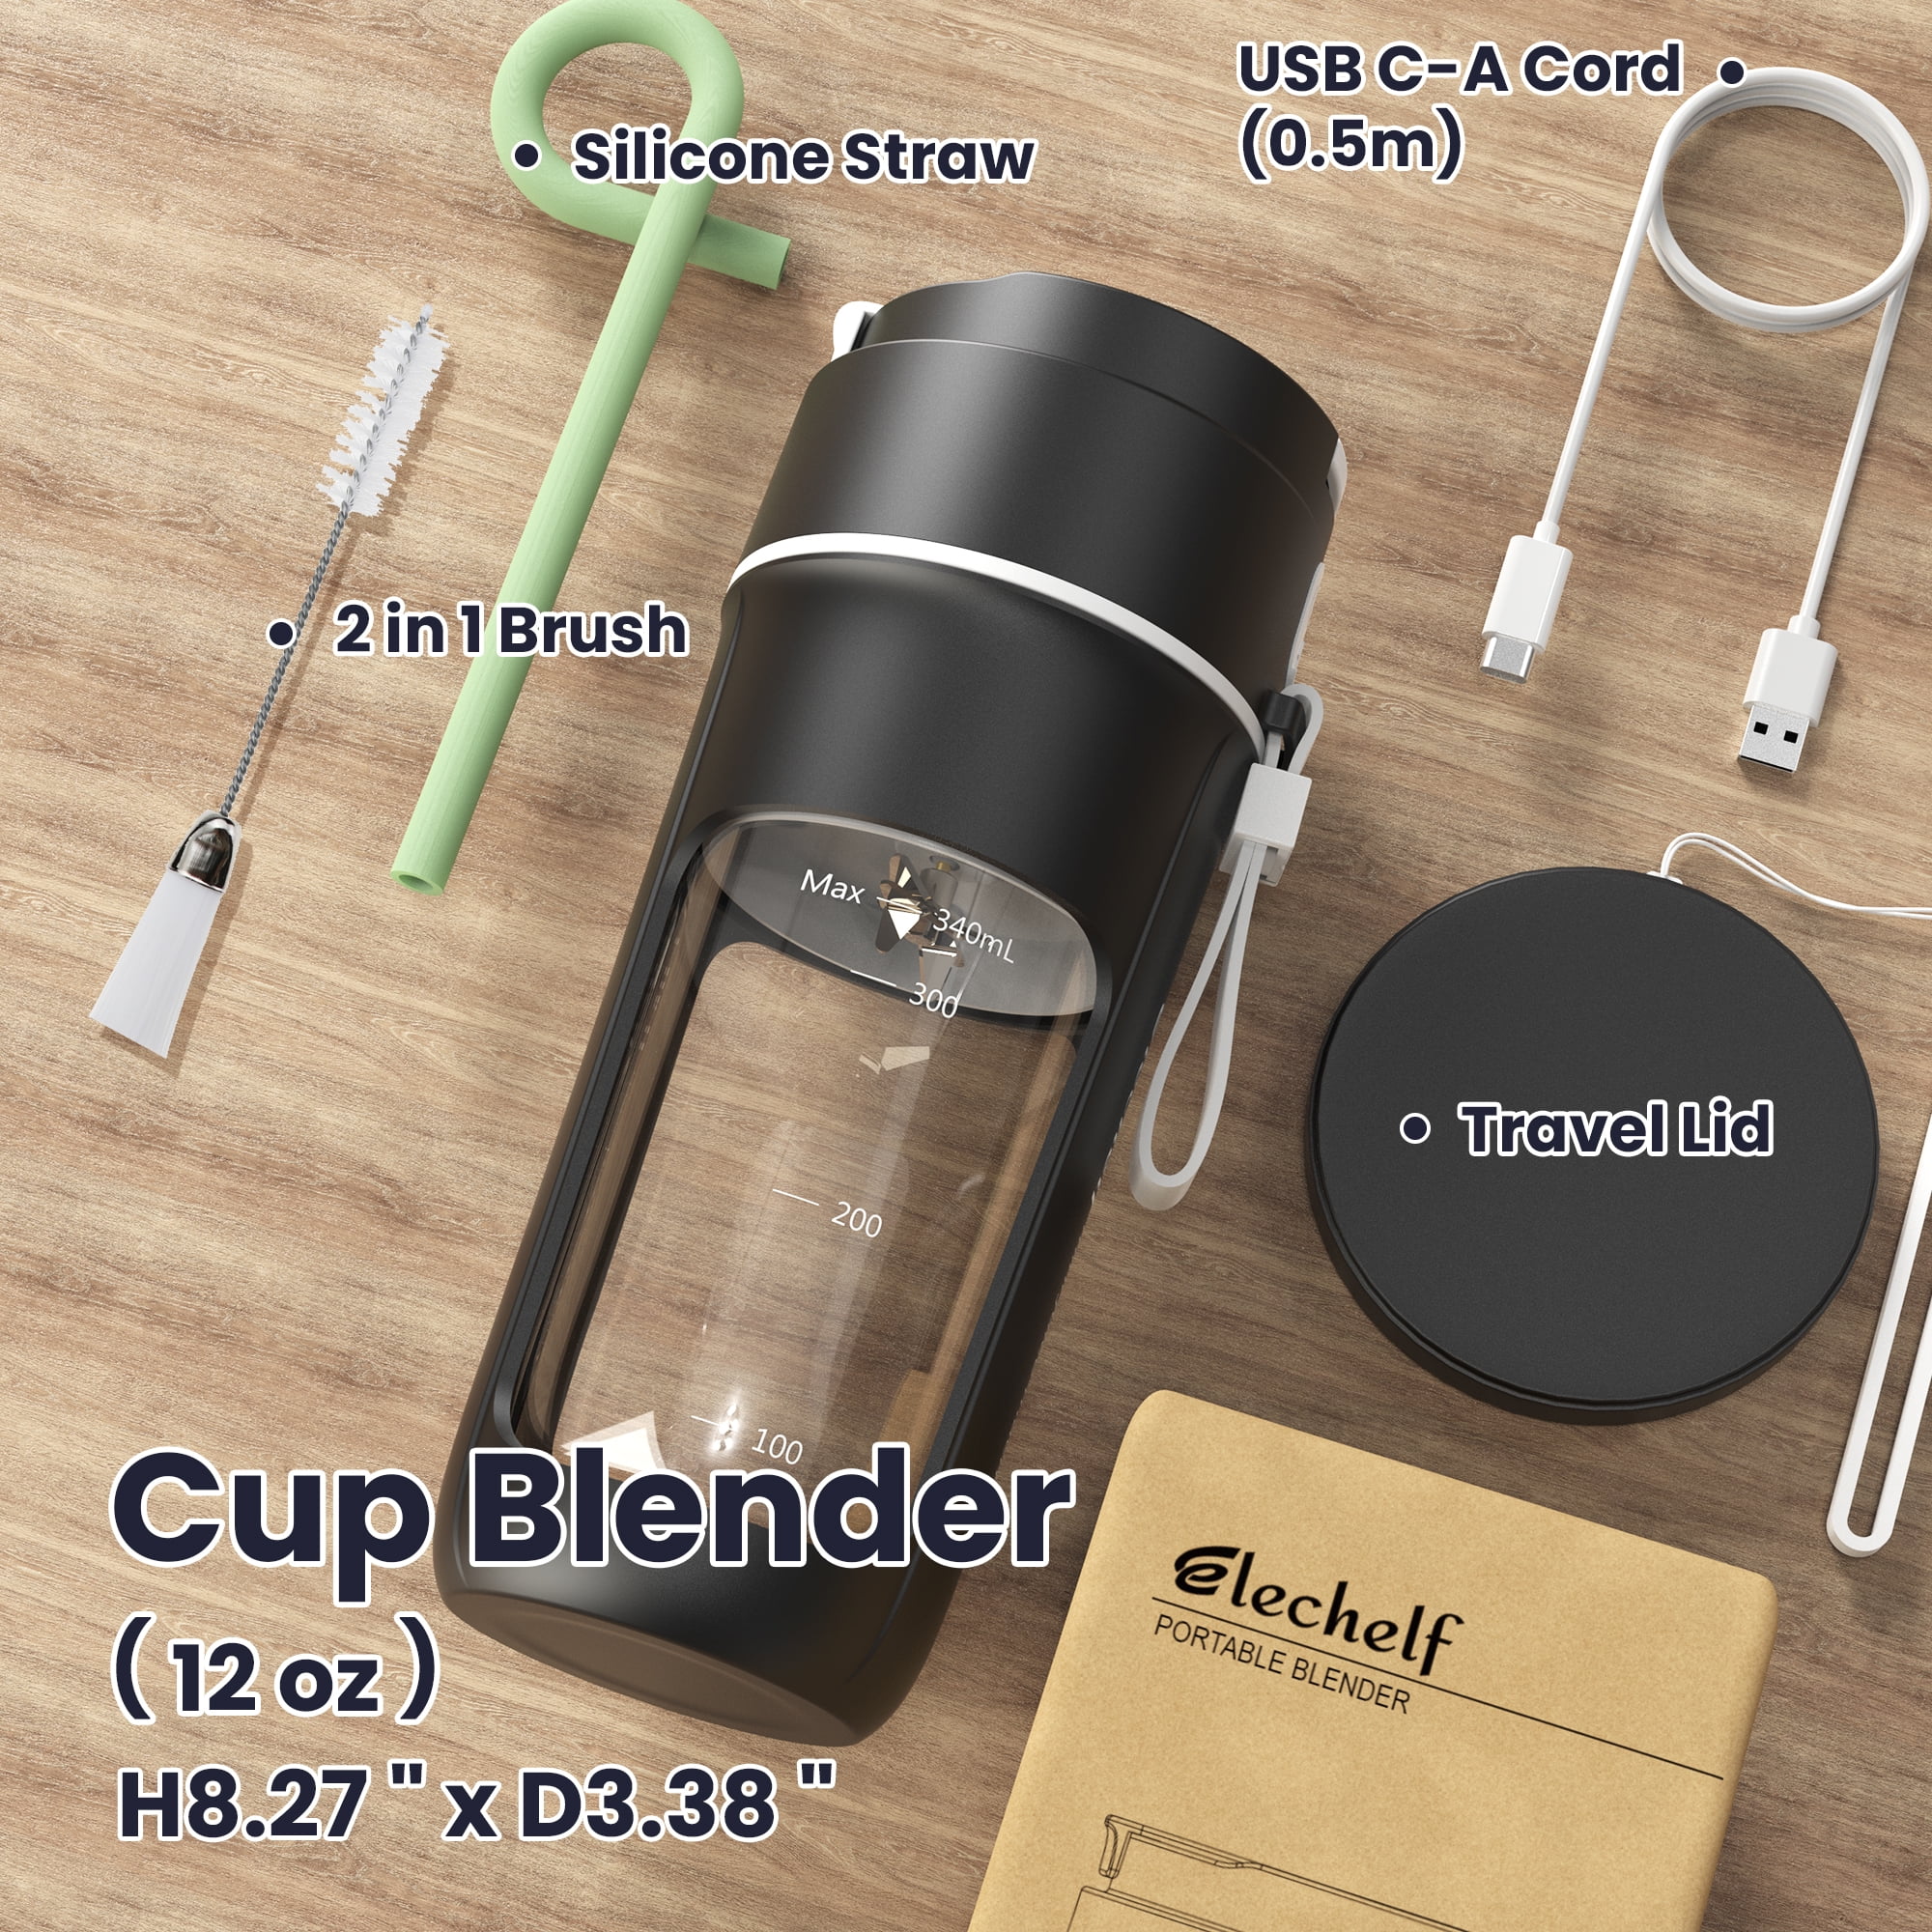  Elechelf Portable Blender, Mini Blender For Shakes and